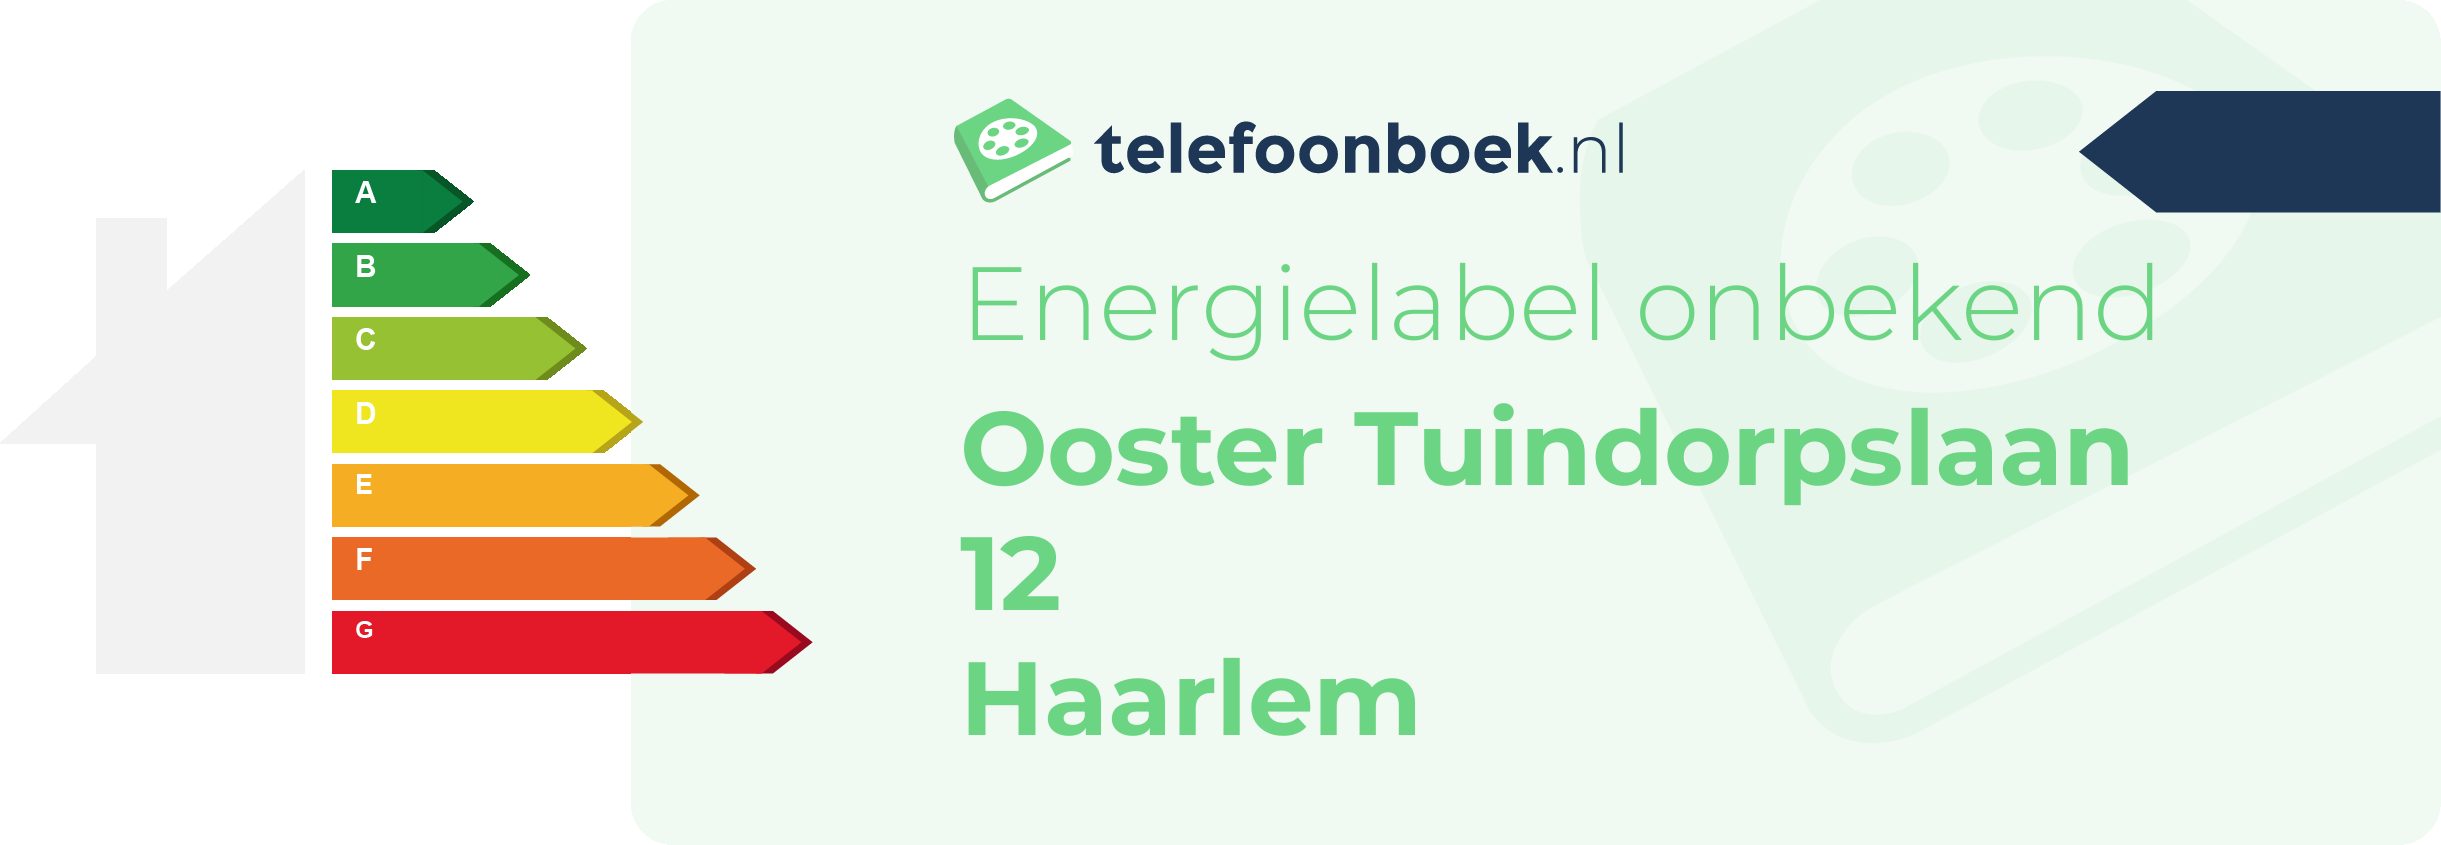 Energielabel Ooster Tuindorpslaan 12 Haarlem